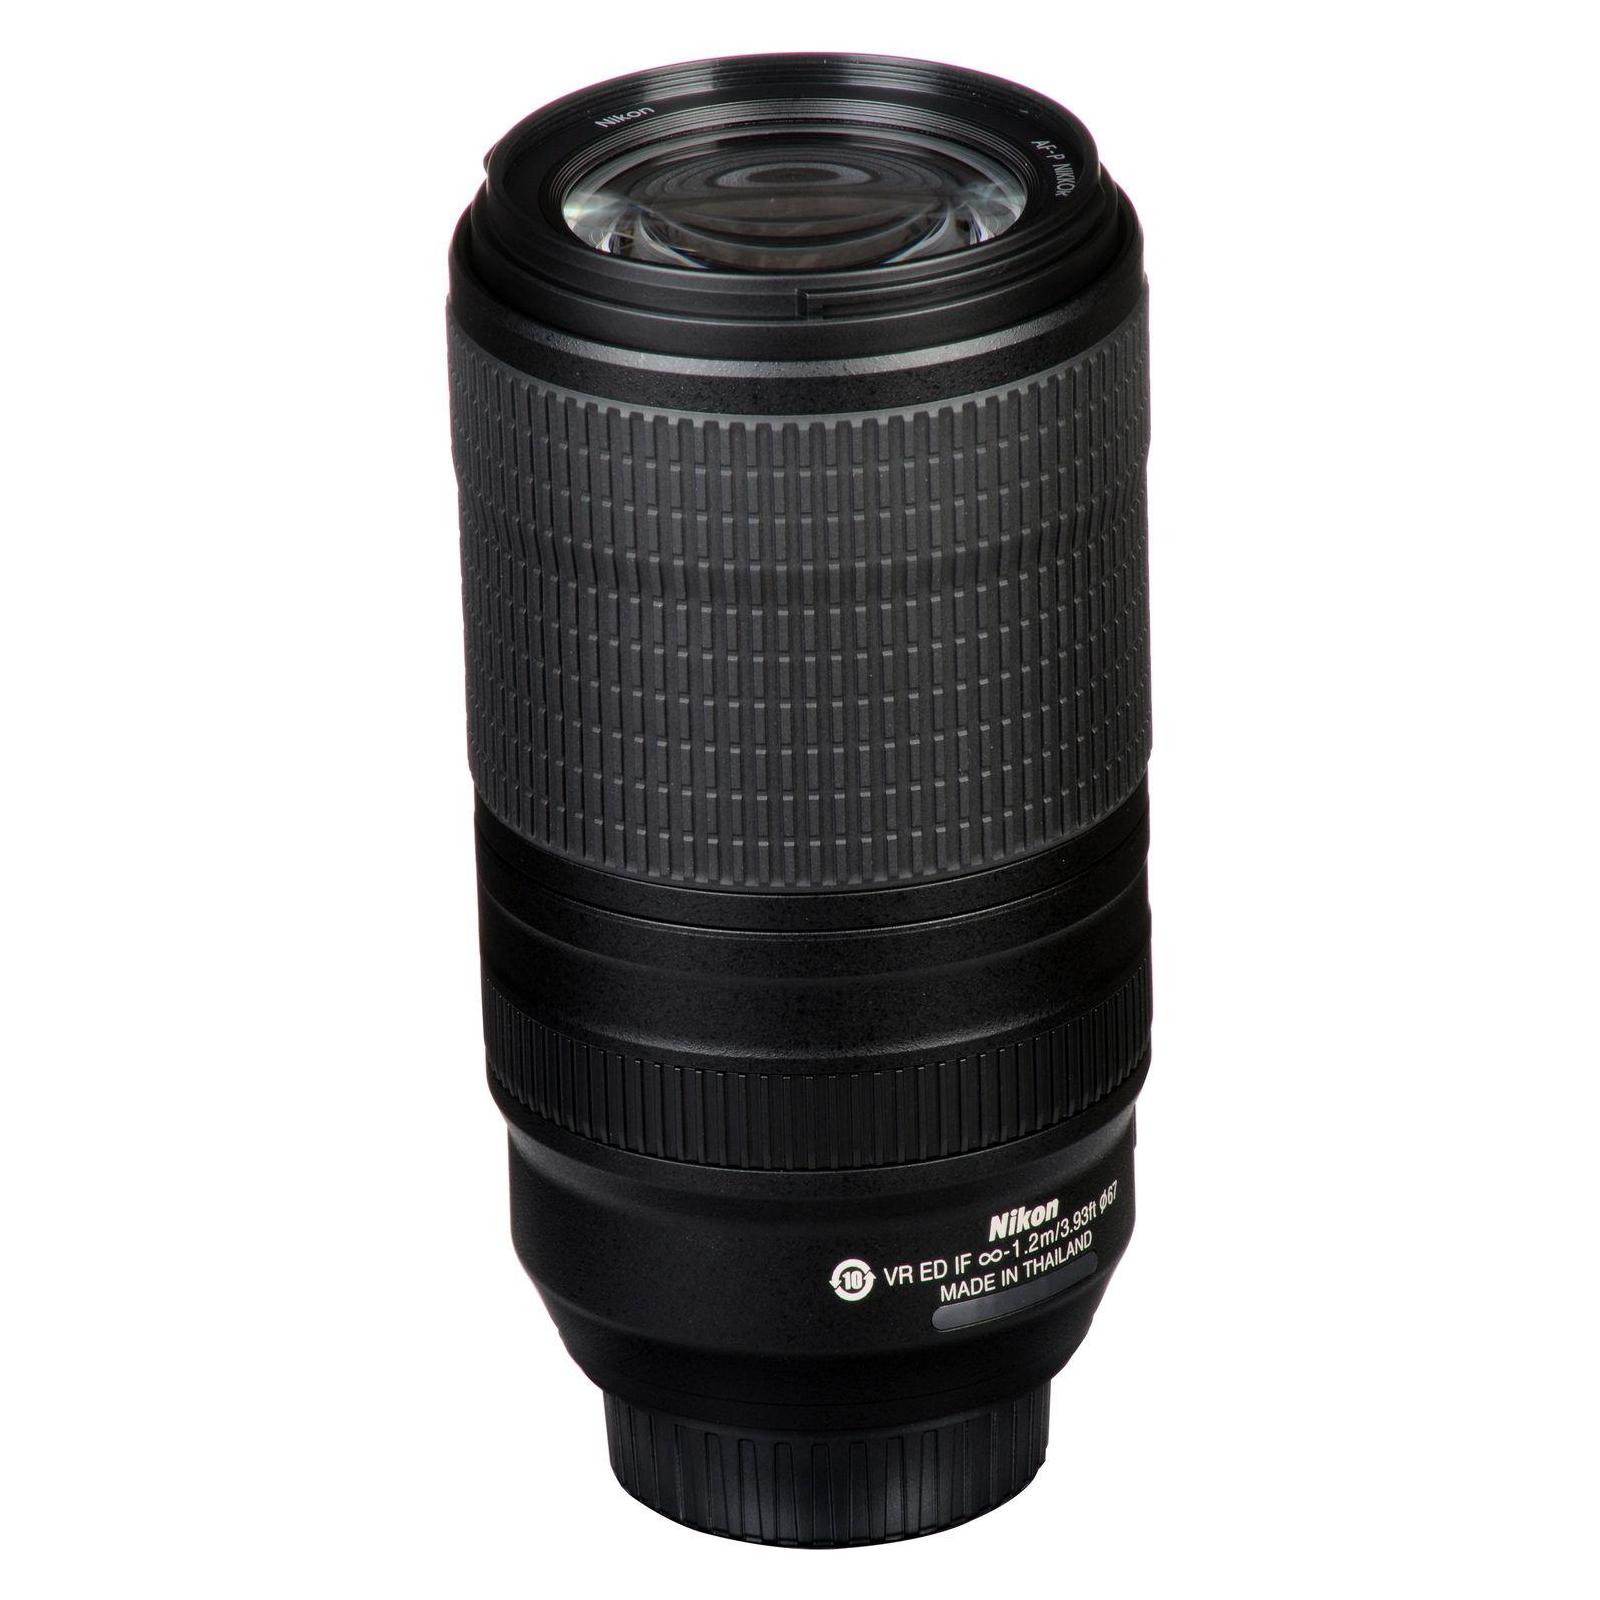 Об'єктив Nikon 70-300mm f/4.5-5.6E ED AF-P VR (JAA833DA) зображення 9